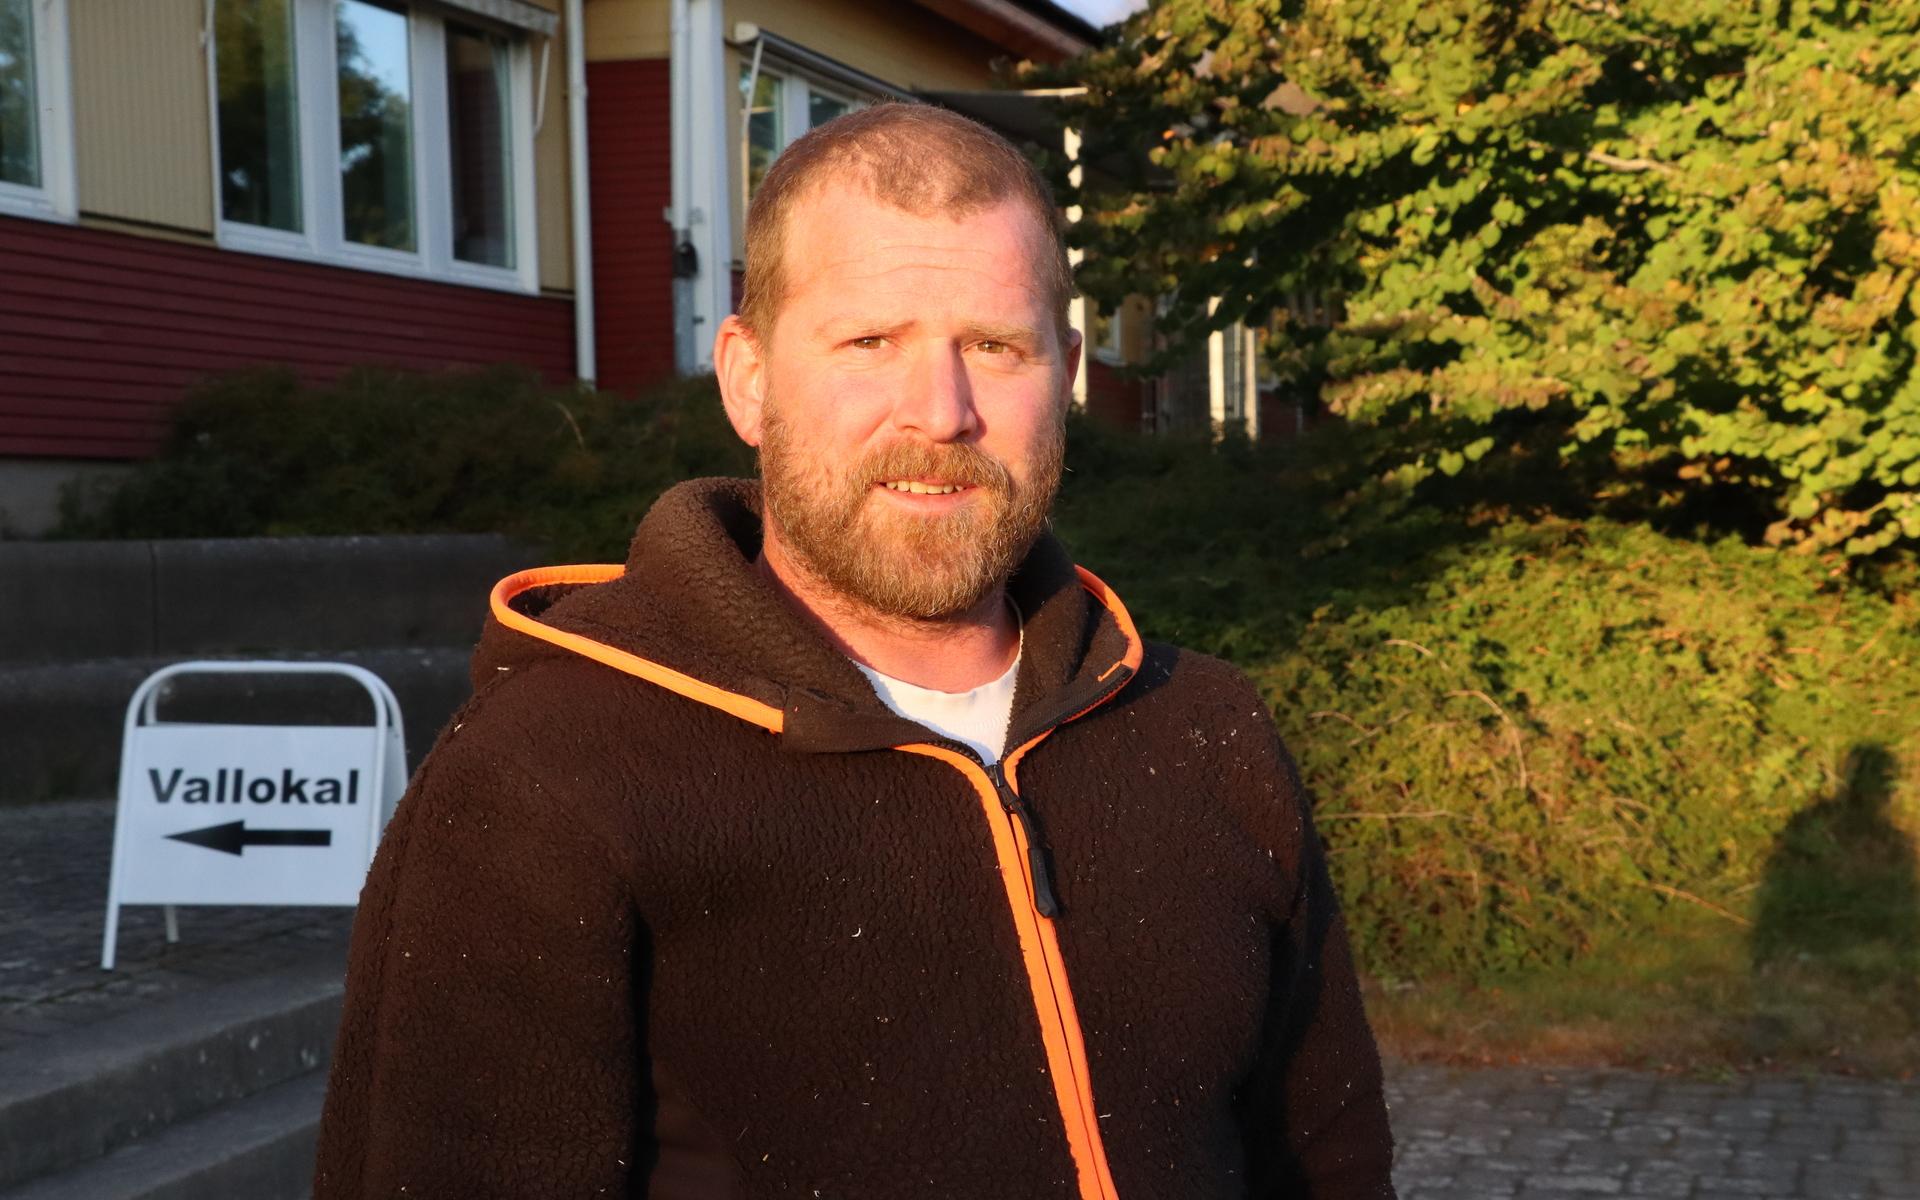 Jonas Eriksson var en av de sista in i vallokalen i Gällinge. Han tycker att det var både rörigt och smidigt.